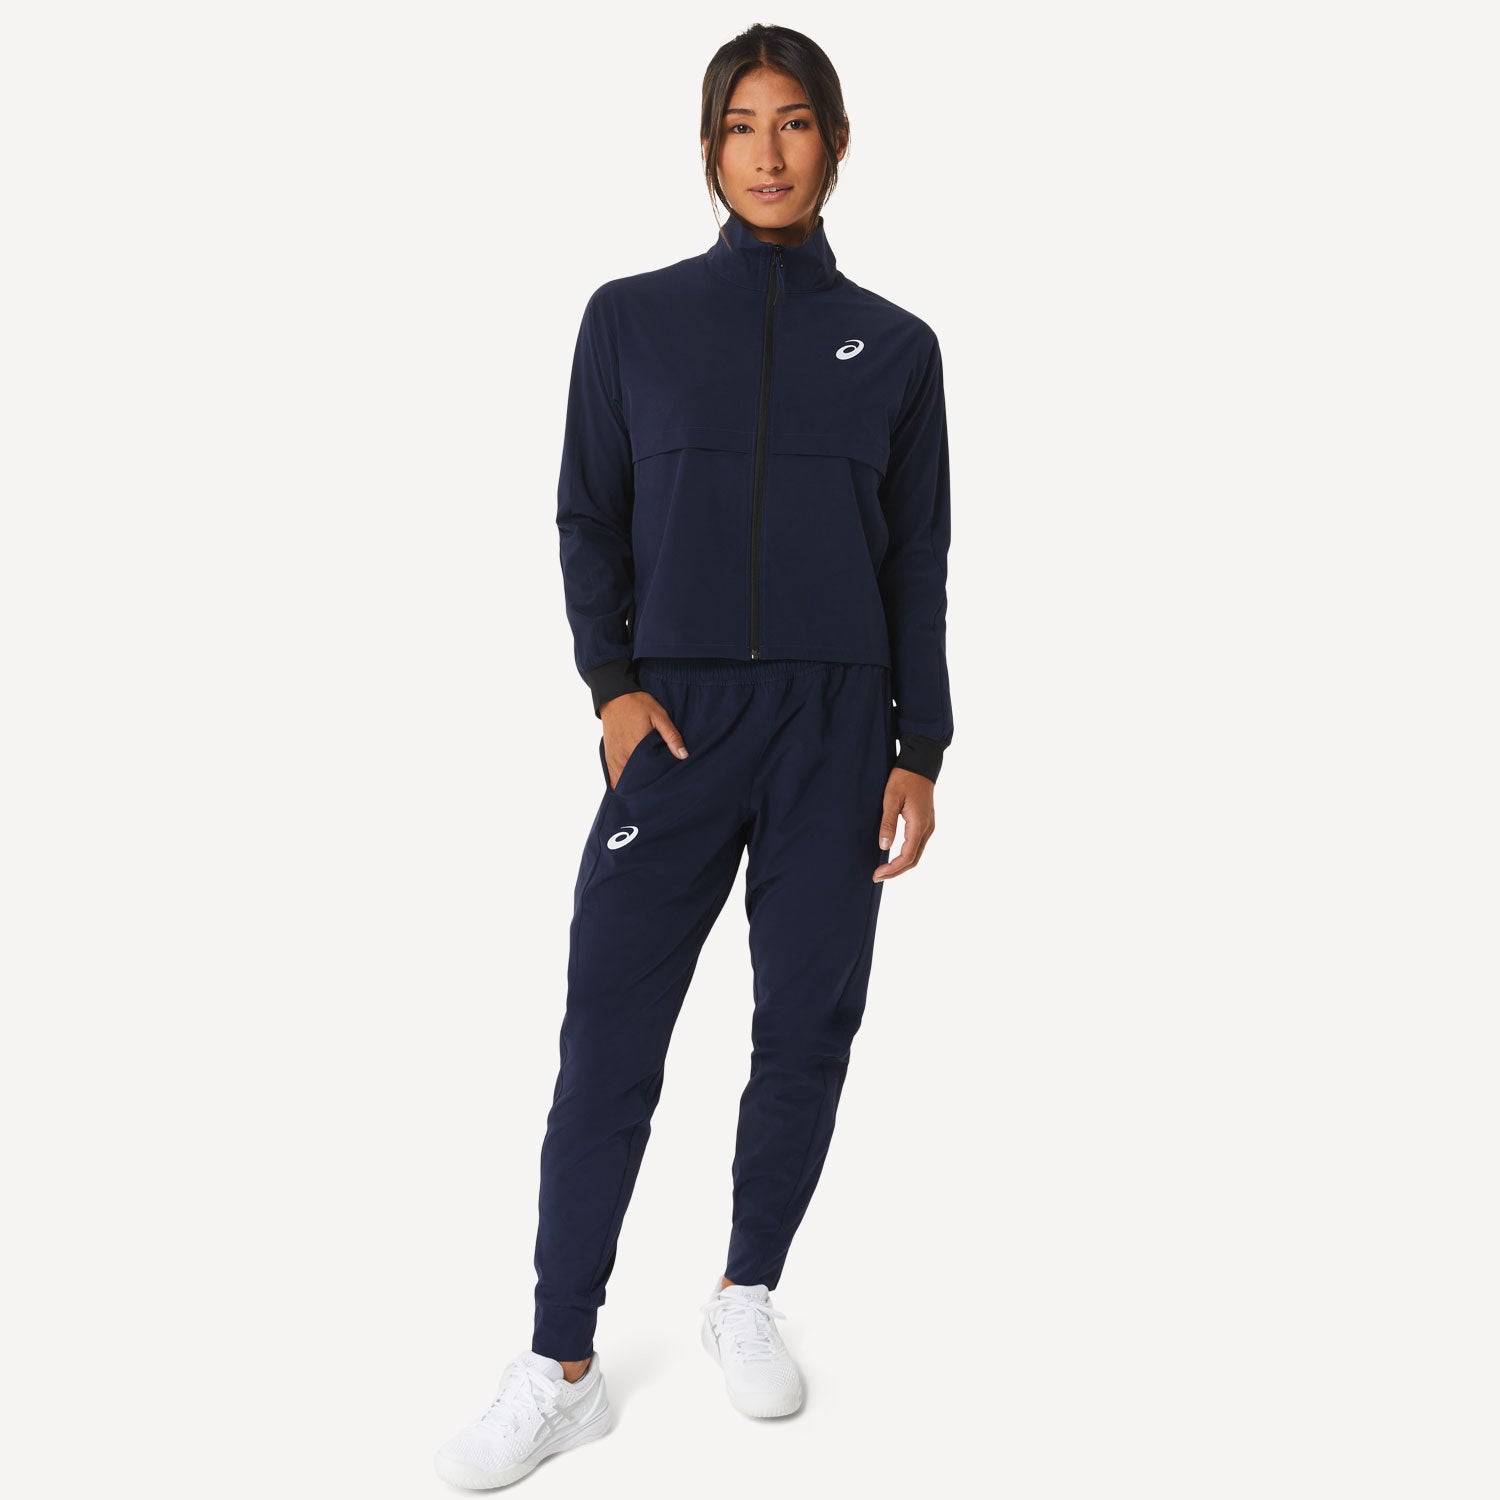 ASICS Match Women's Tennis Jacket Blue (6)